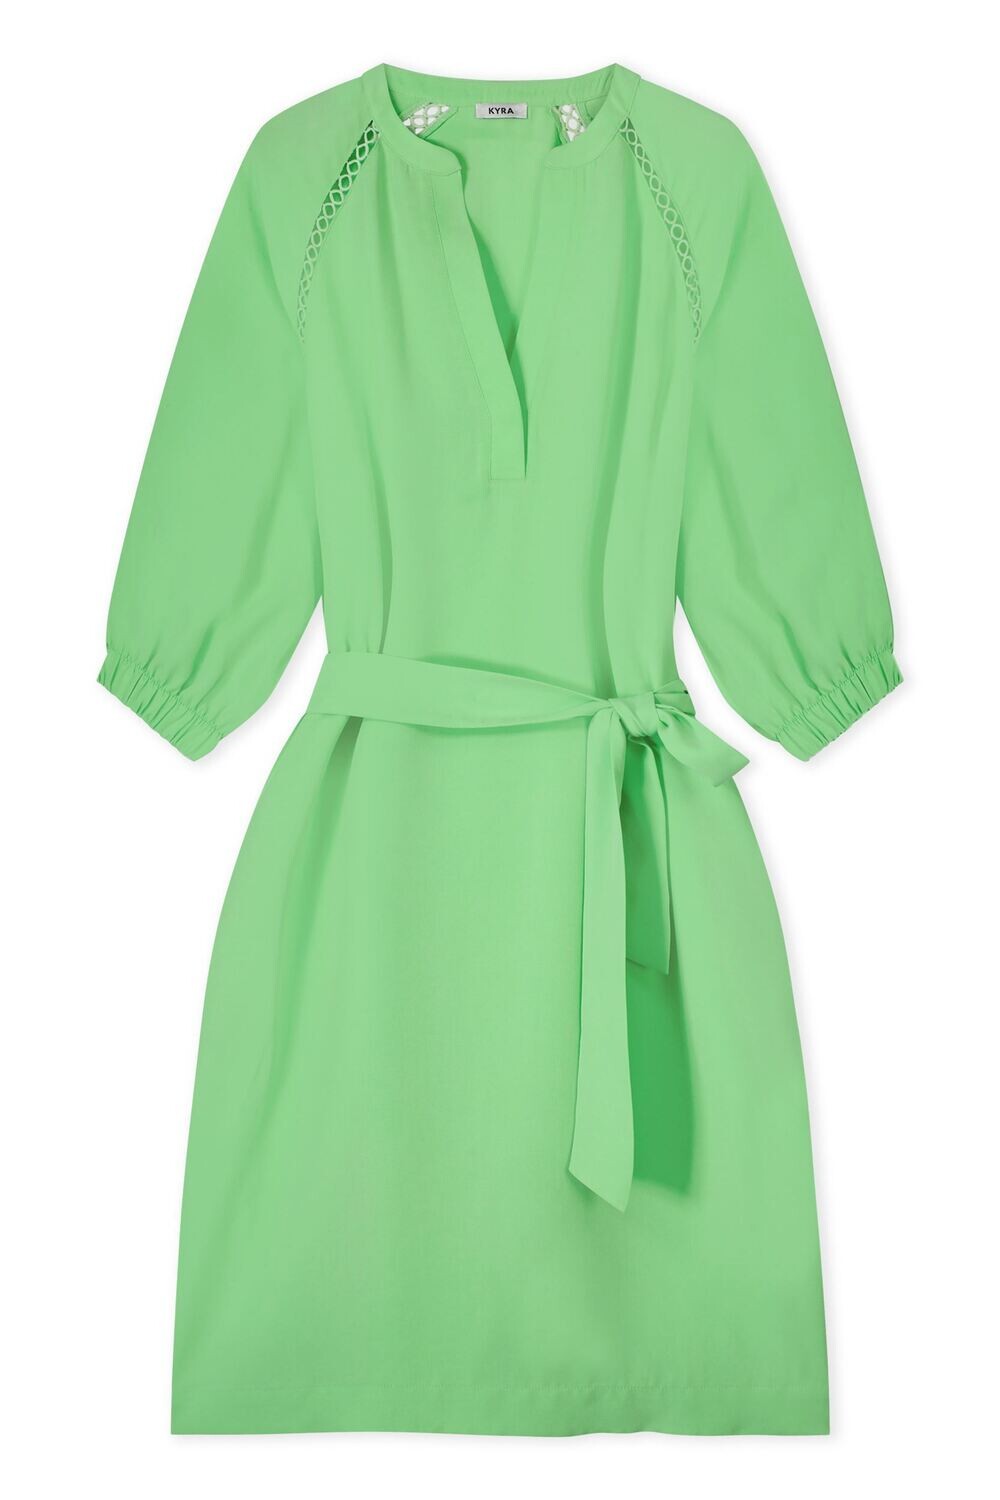 KYRA jurk, summer green